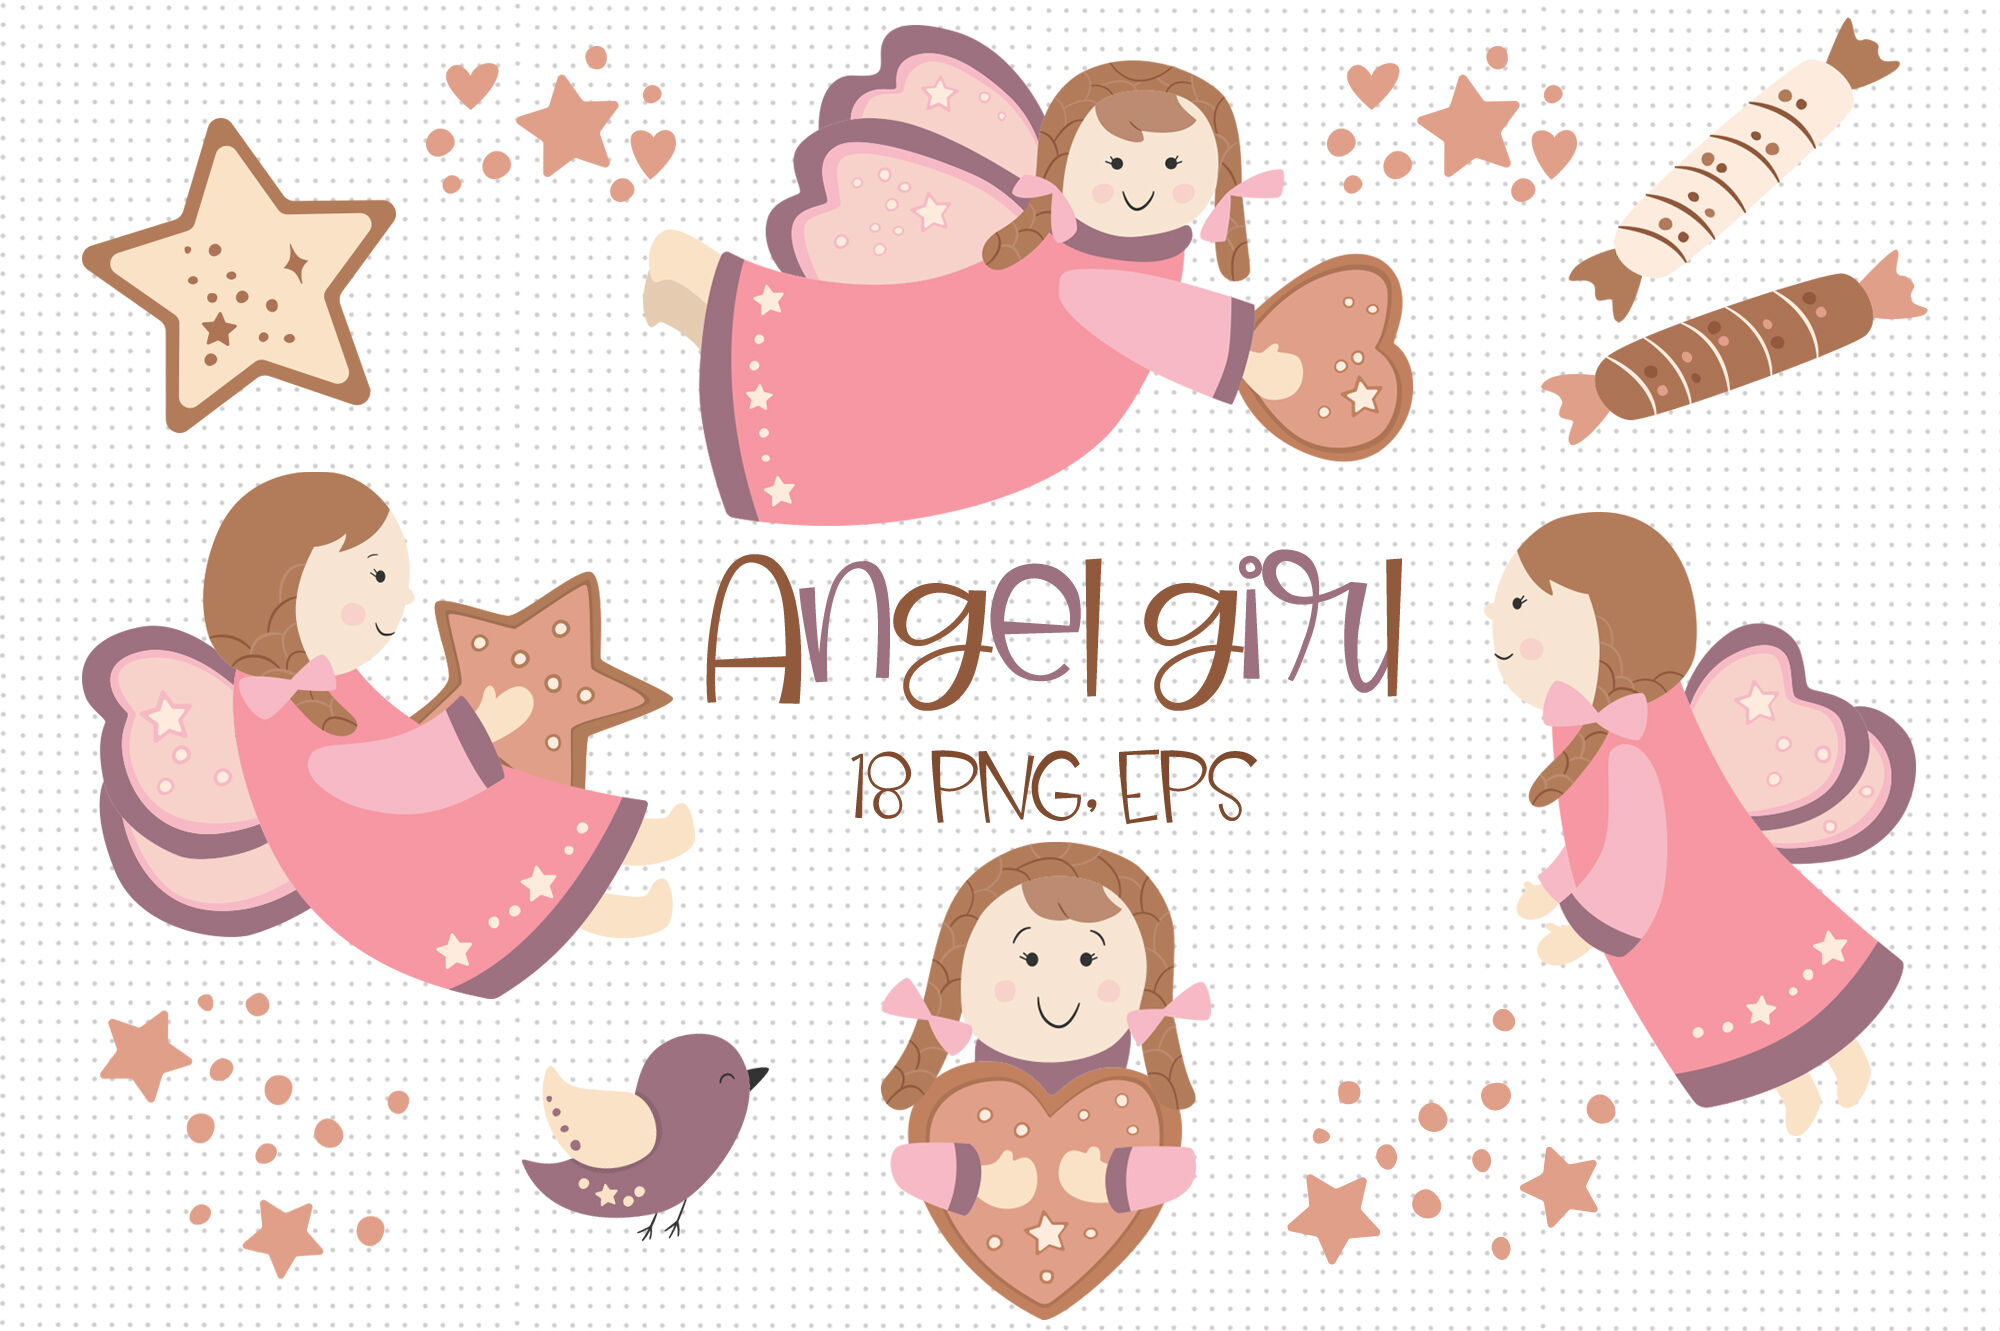 girl angel clip art